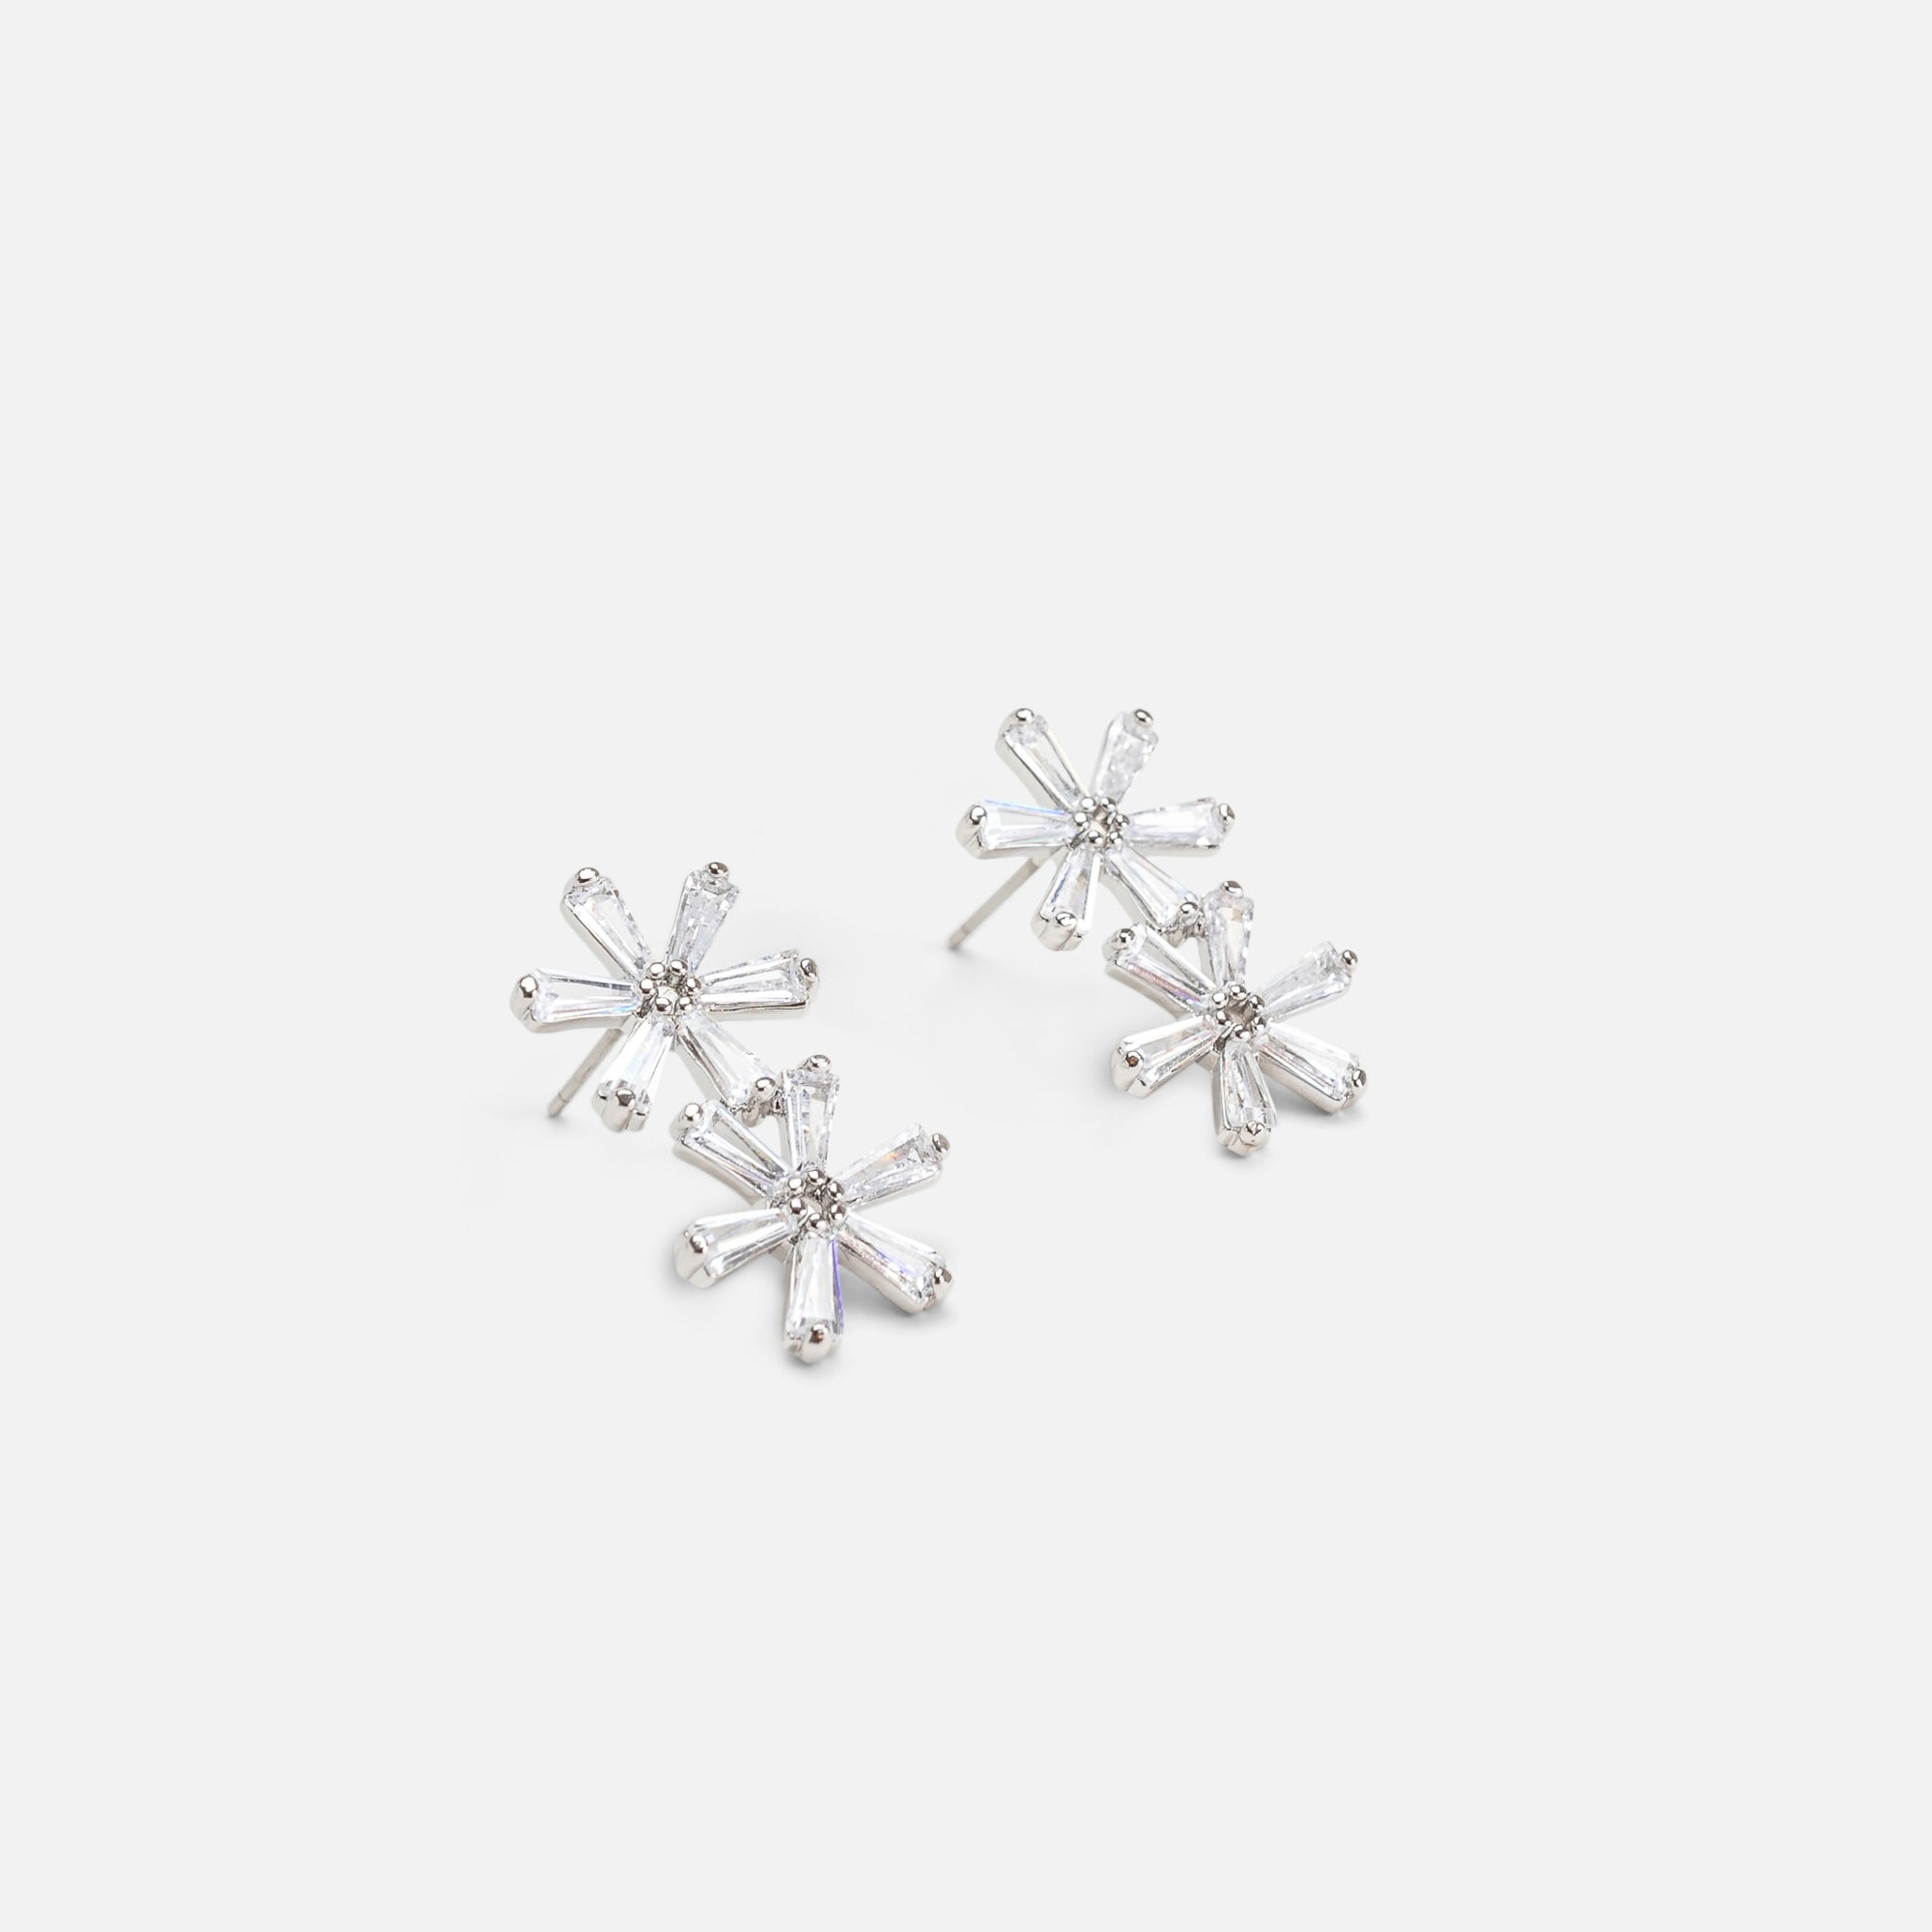 Boucles d’oreilles argentées avec petites fleurs